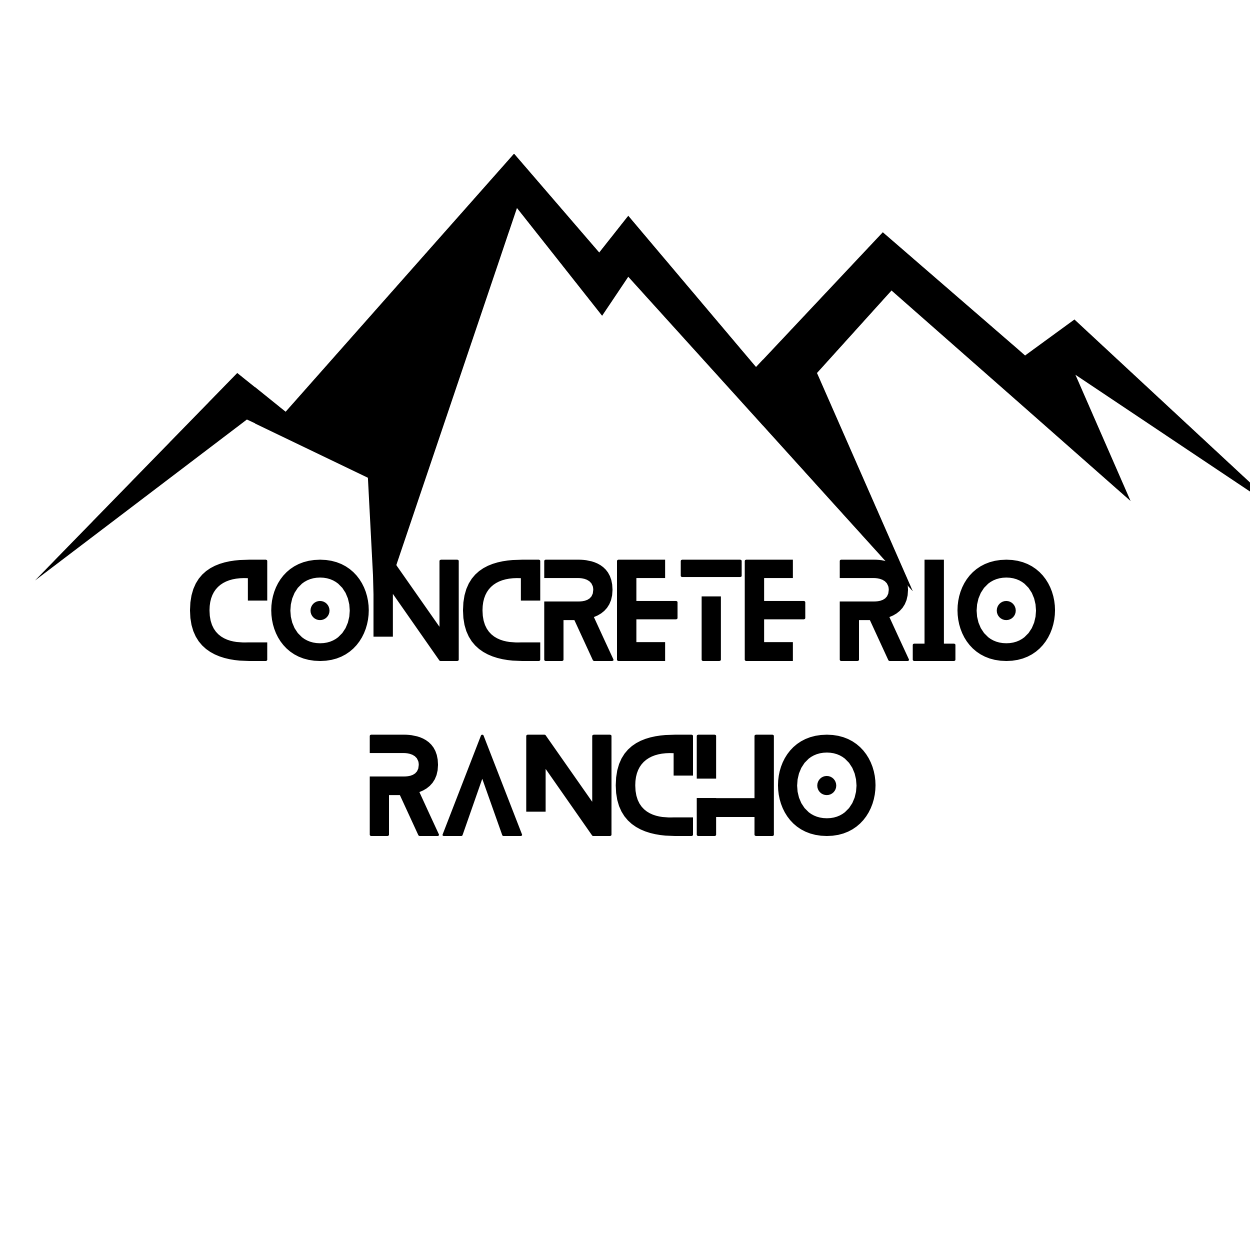 footer logo for concrete rio rancho